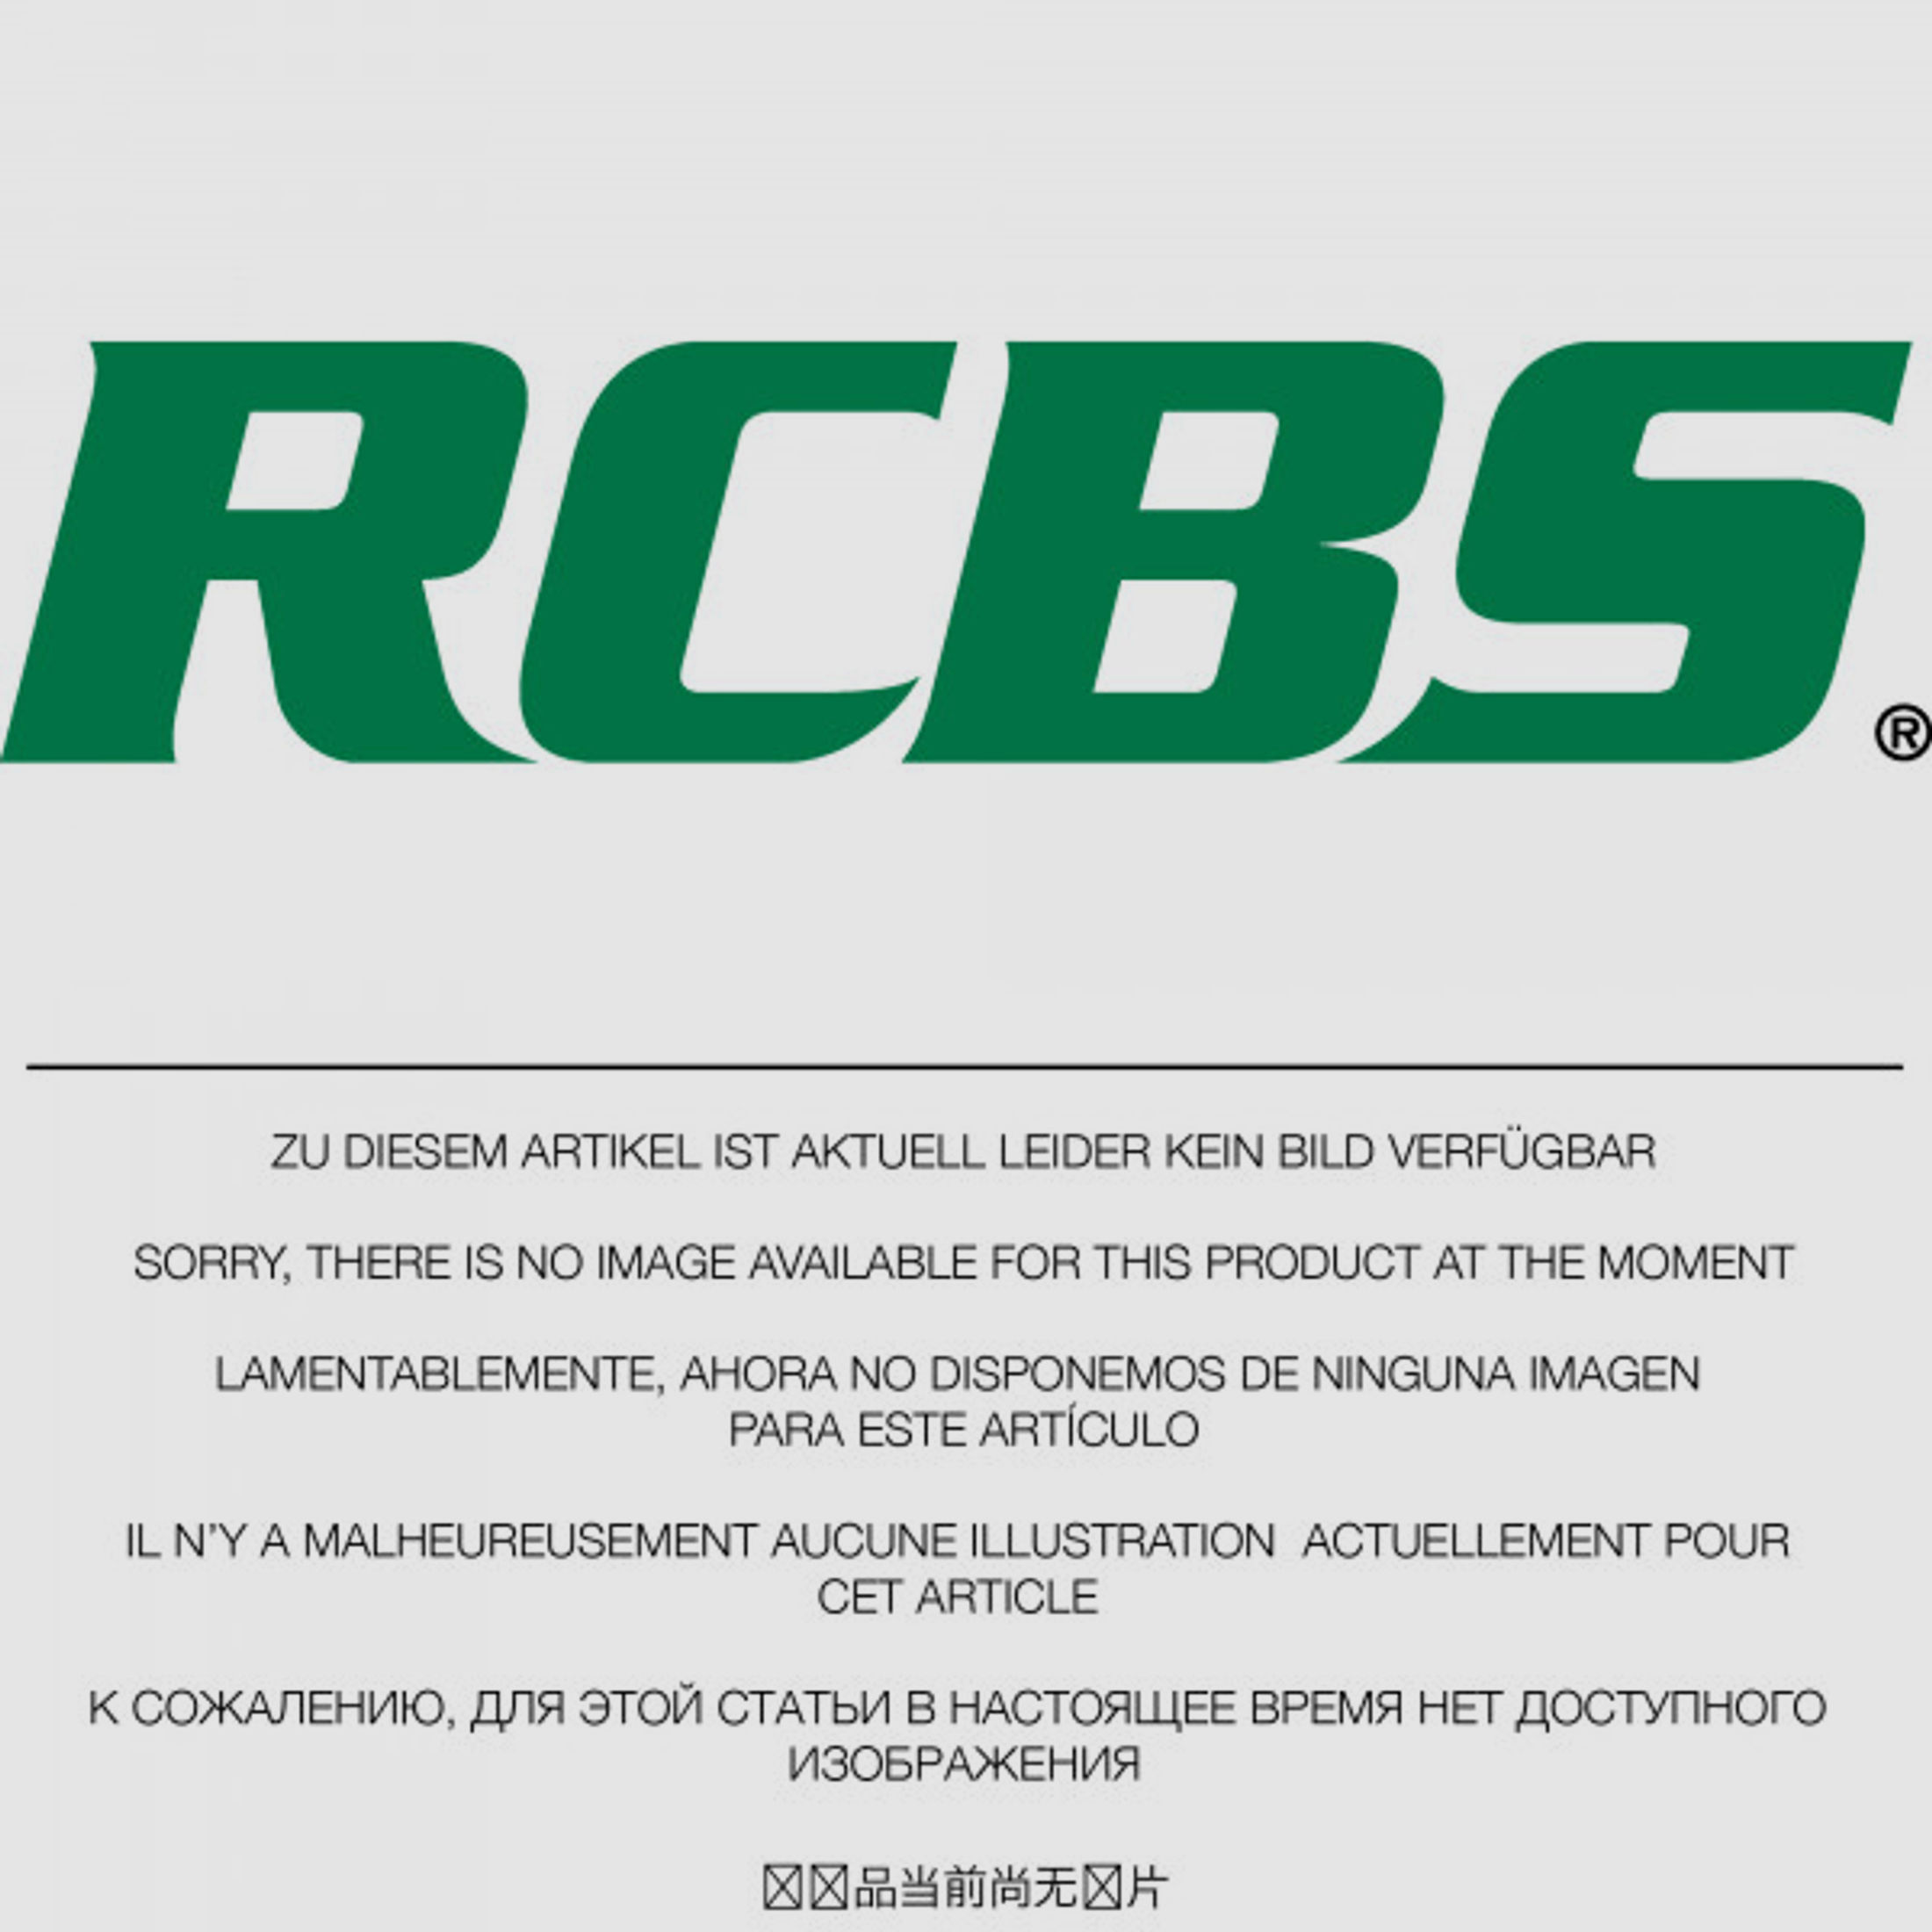 RCBS Lube-A-Matic Top Punch Geschoss Setzstempel Nr. 632 #85632